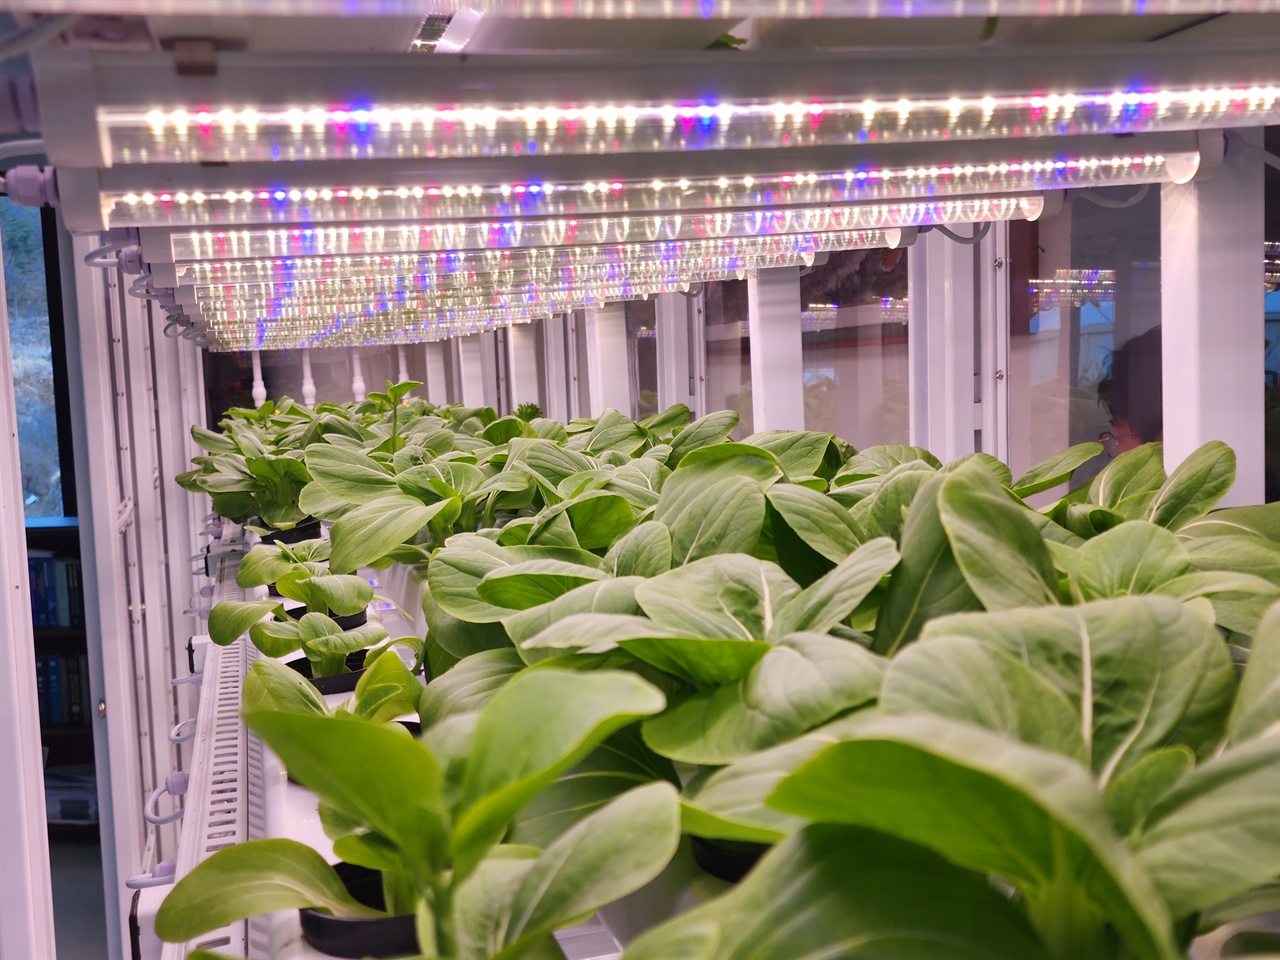 네이처팜에서 개발한 LED광을 보며 2주만에 자란 식물공장 내부 고부가가치 야채 모습

